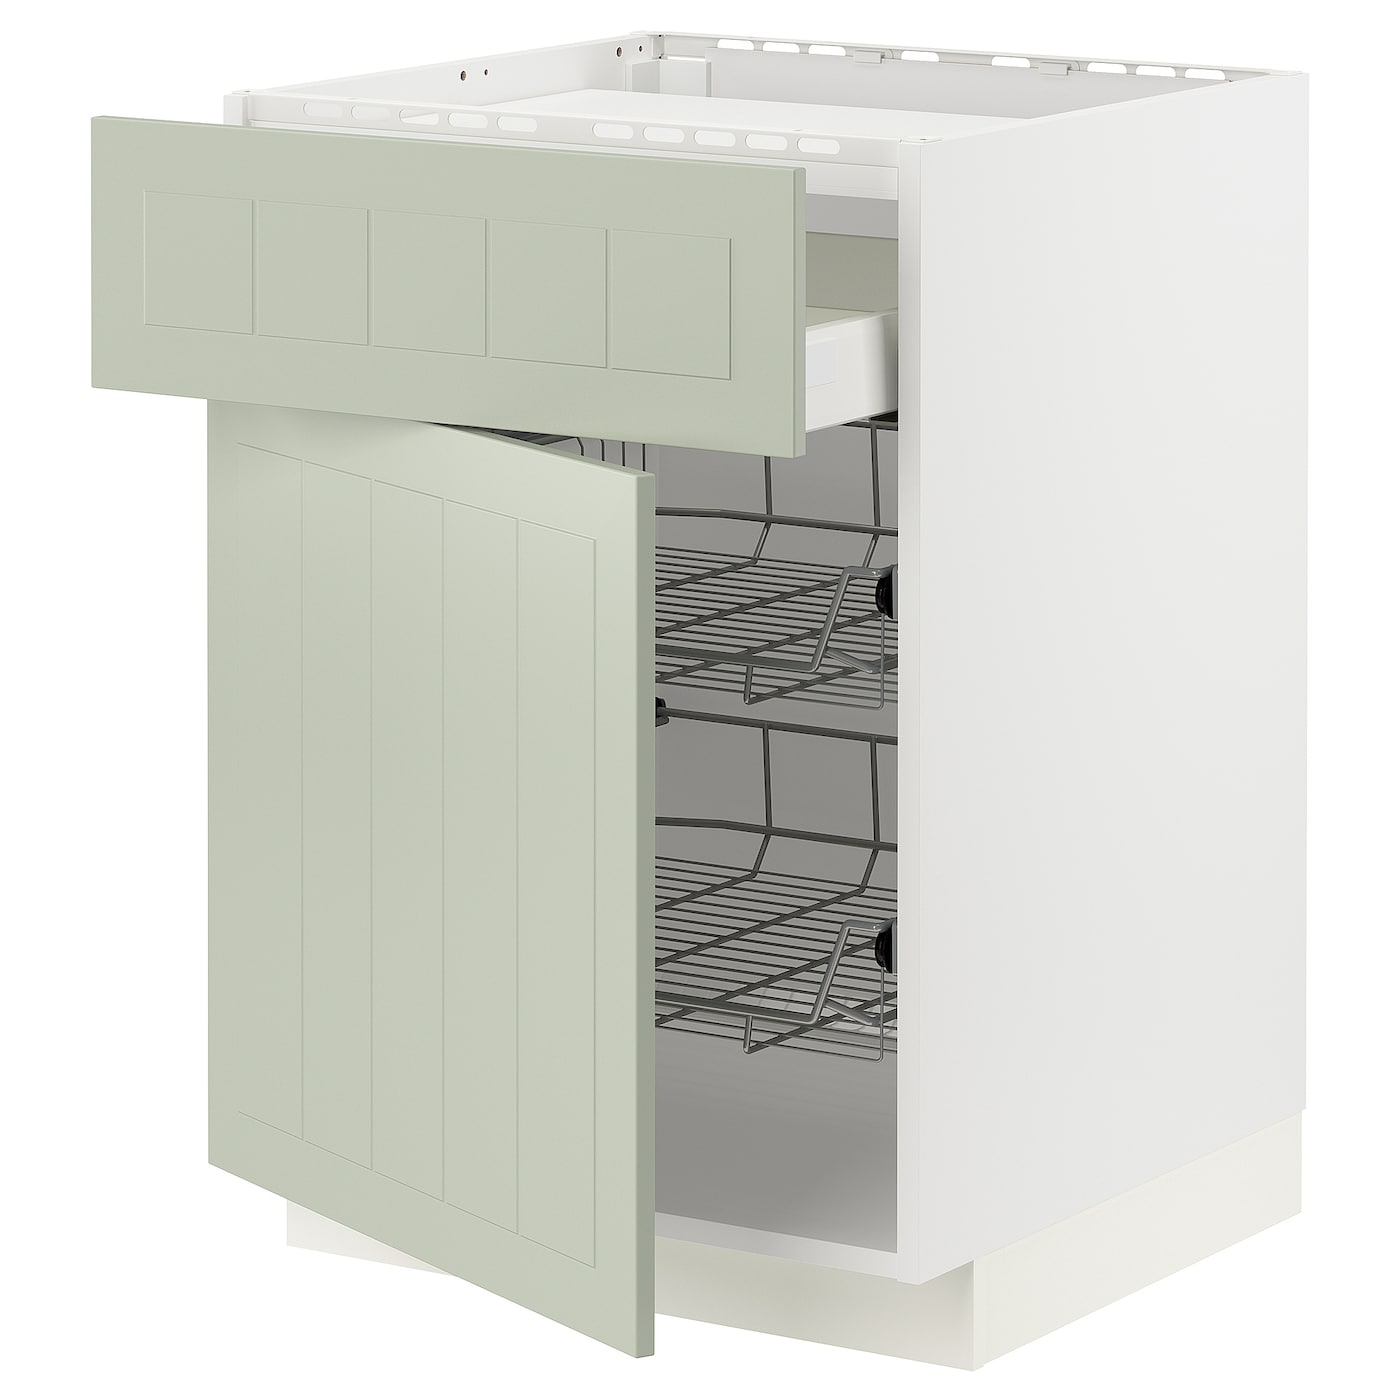 Напольный кухонный шкаф - IKEA METOD MAXIMERA, 88x62x60см, белый/светло-зеленый, МЕТОД МАКСИМЕРА ИКЕА